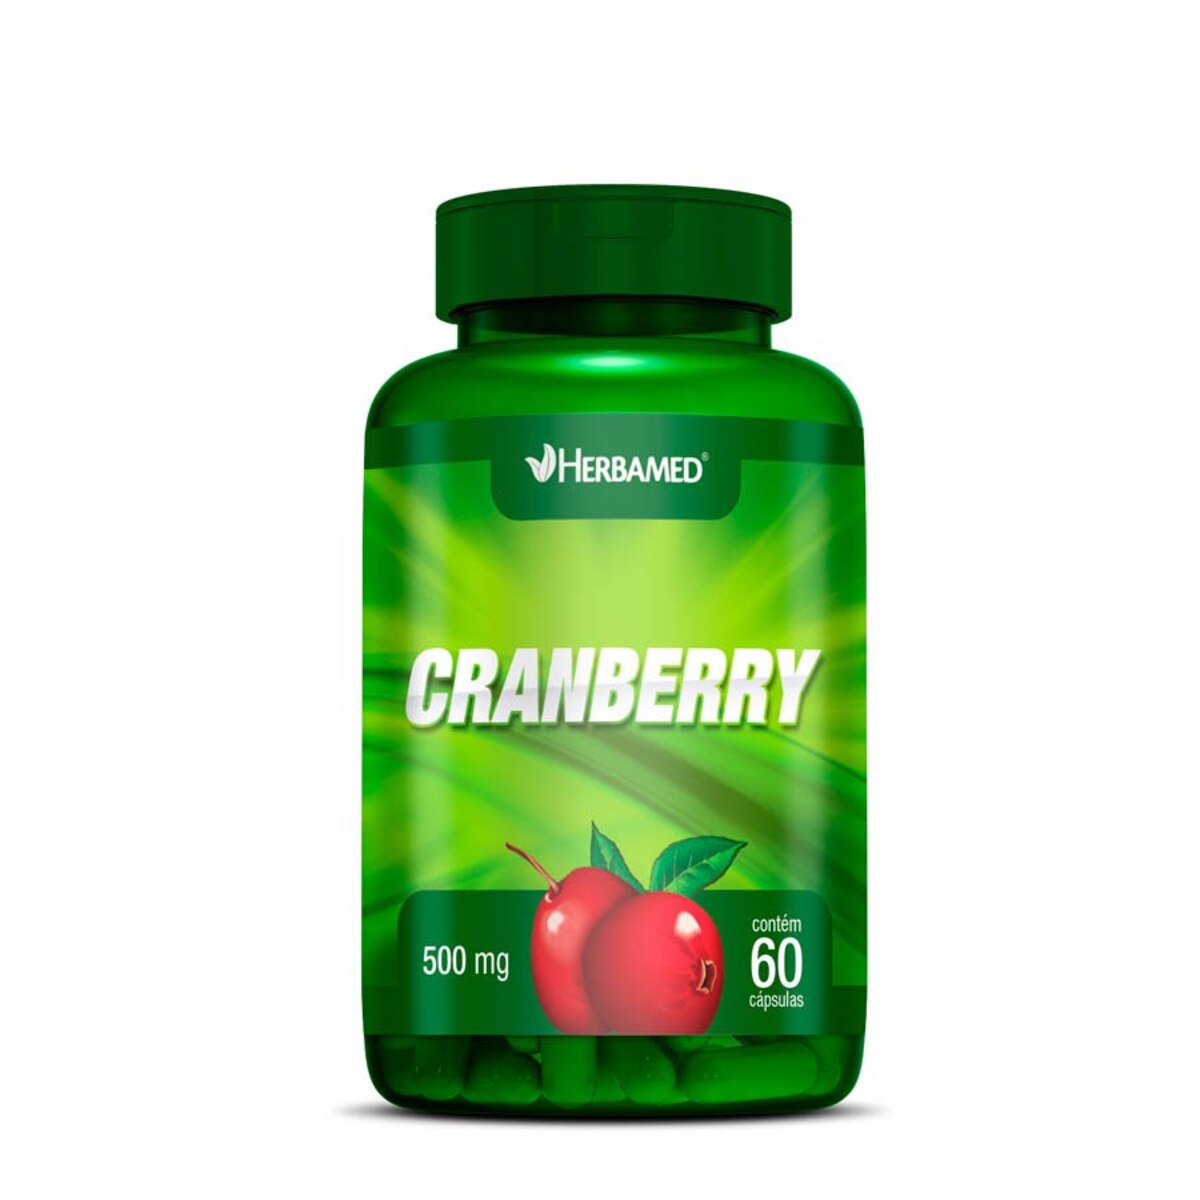 Cranberry 500mg Herbamed 60 C2psulas